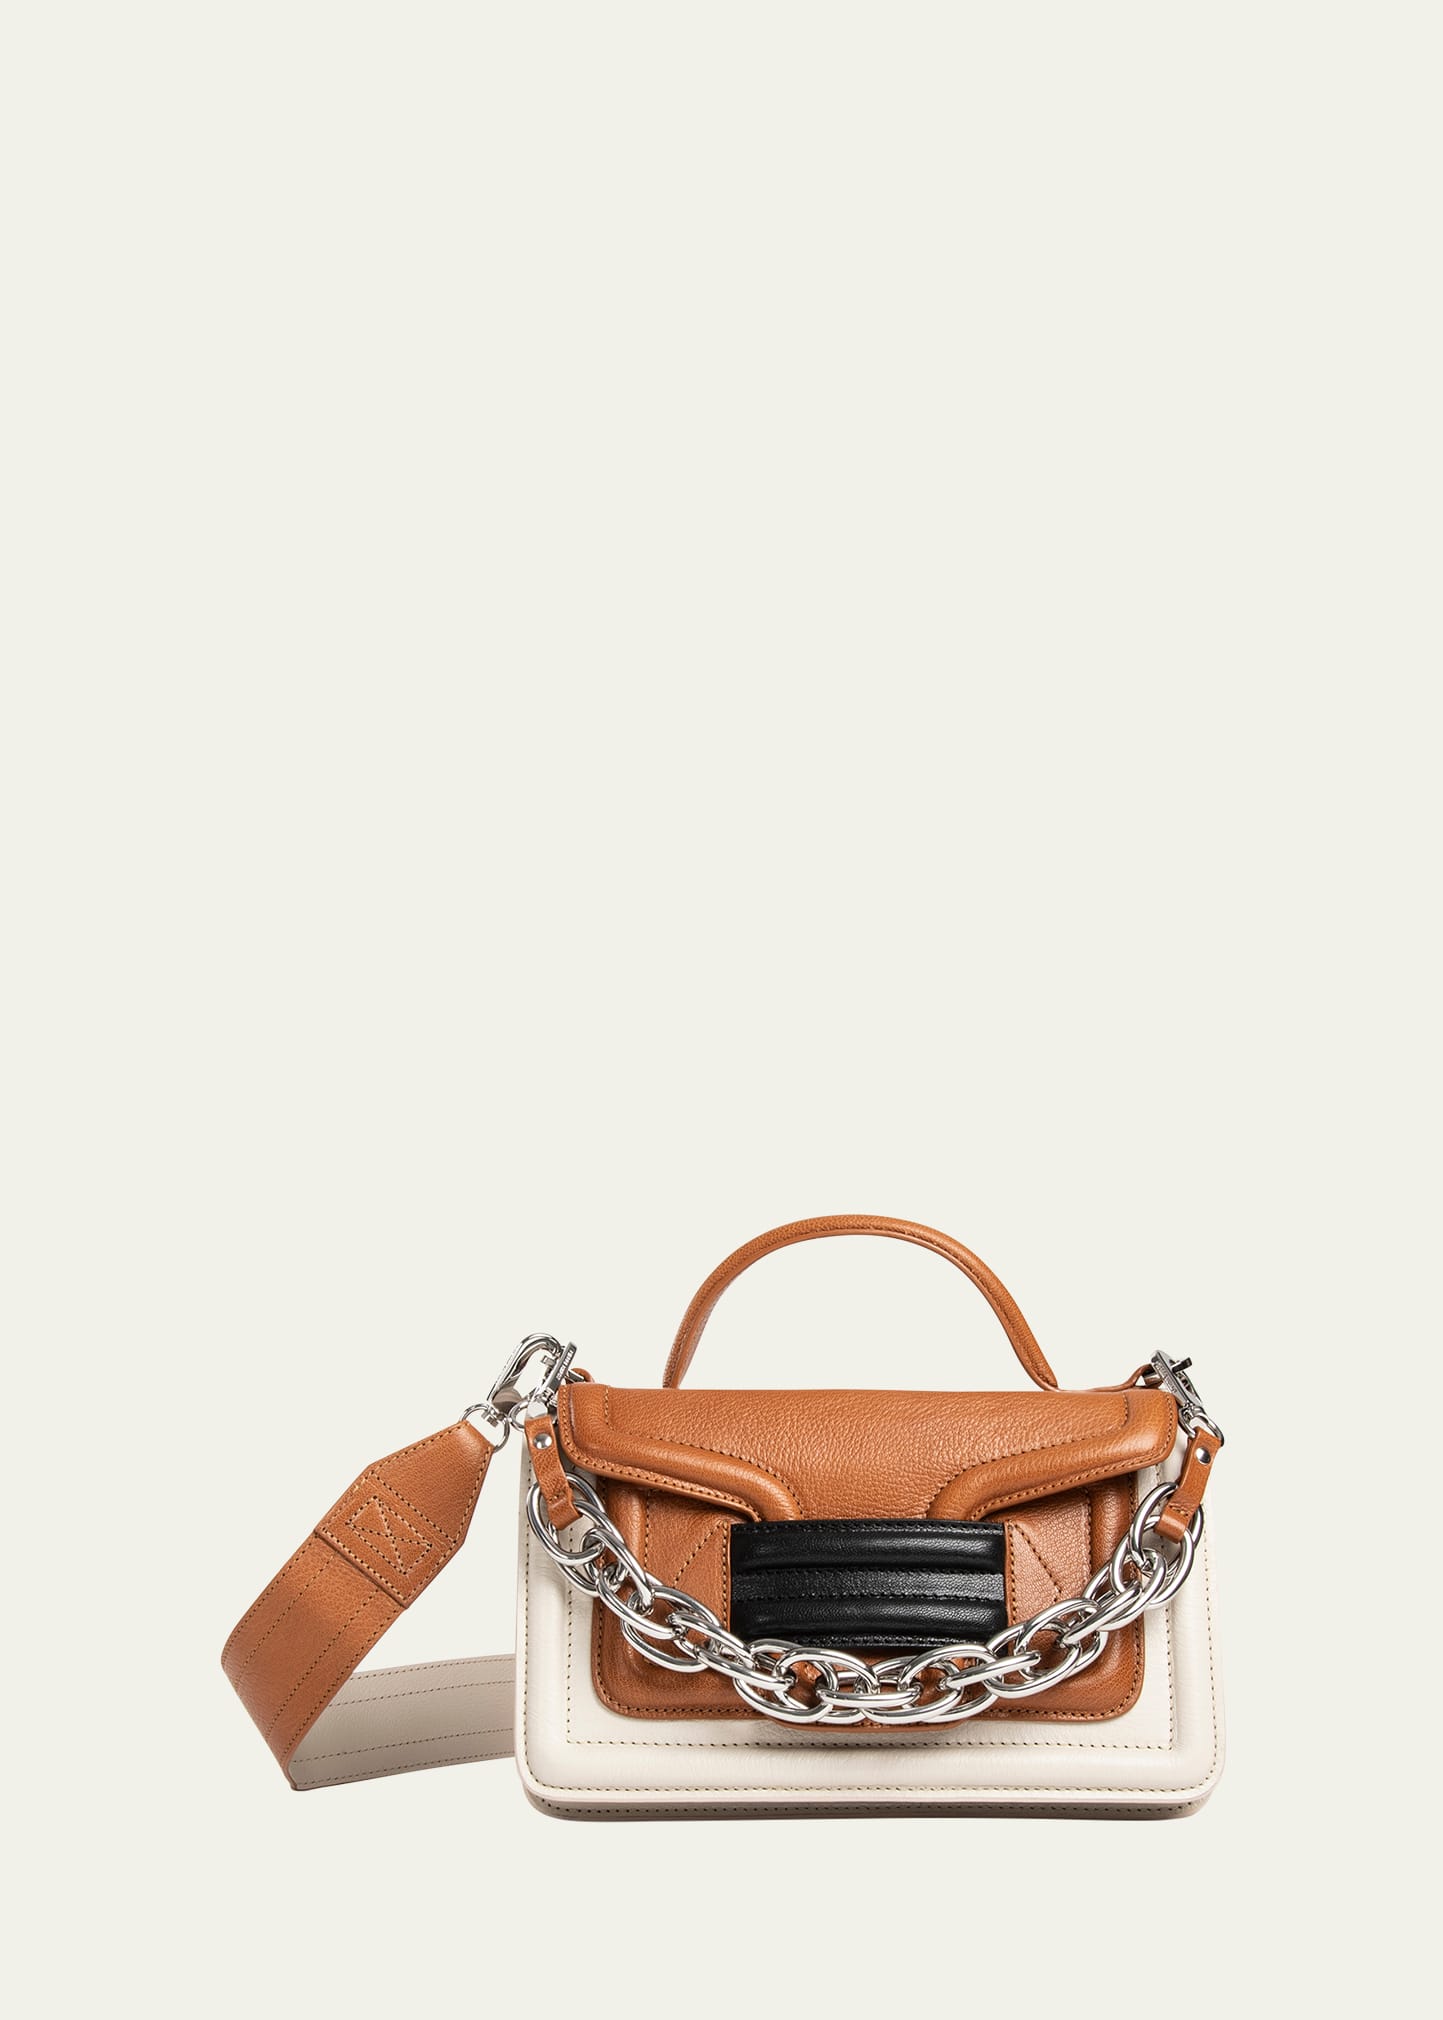 ALPHA women's bag in black glazed leather — PIERRE HARDY